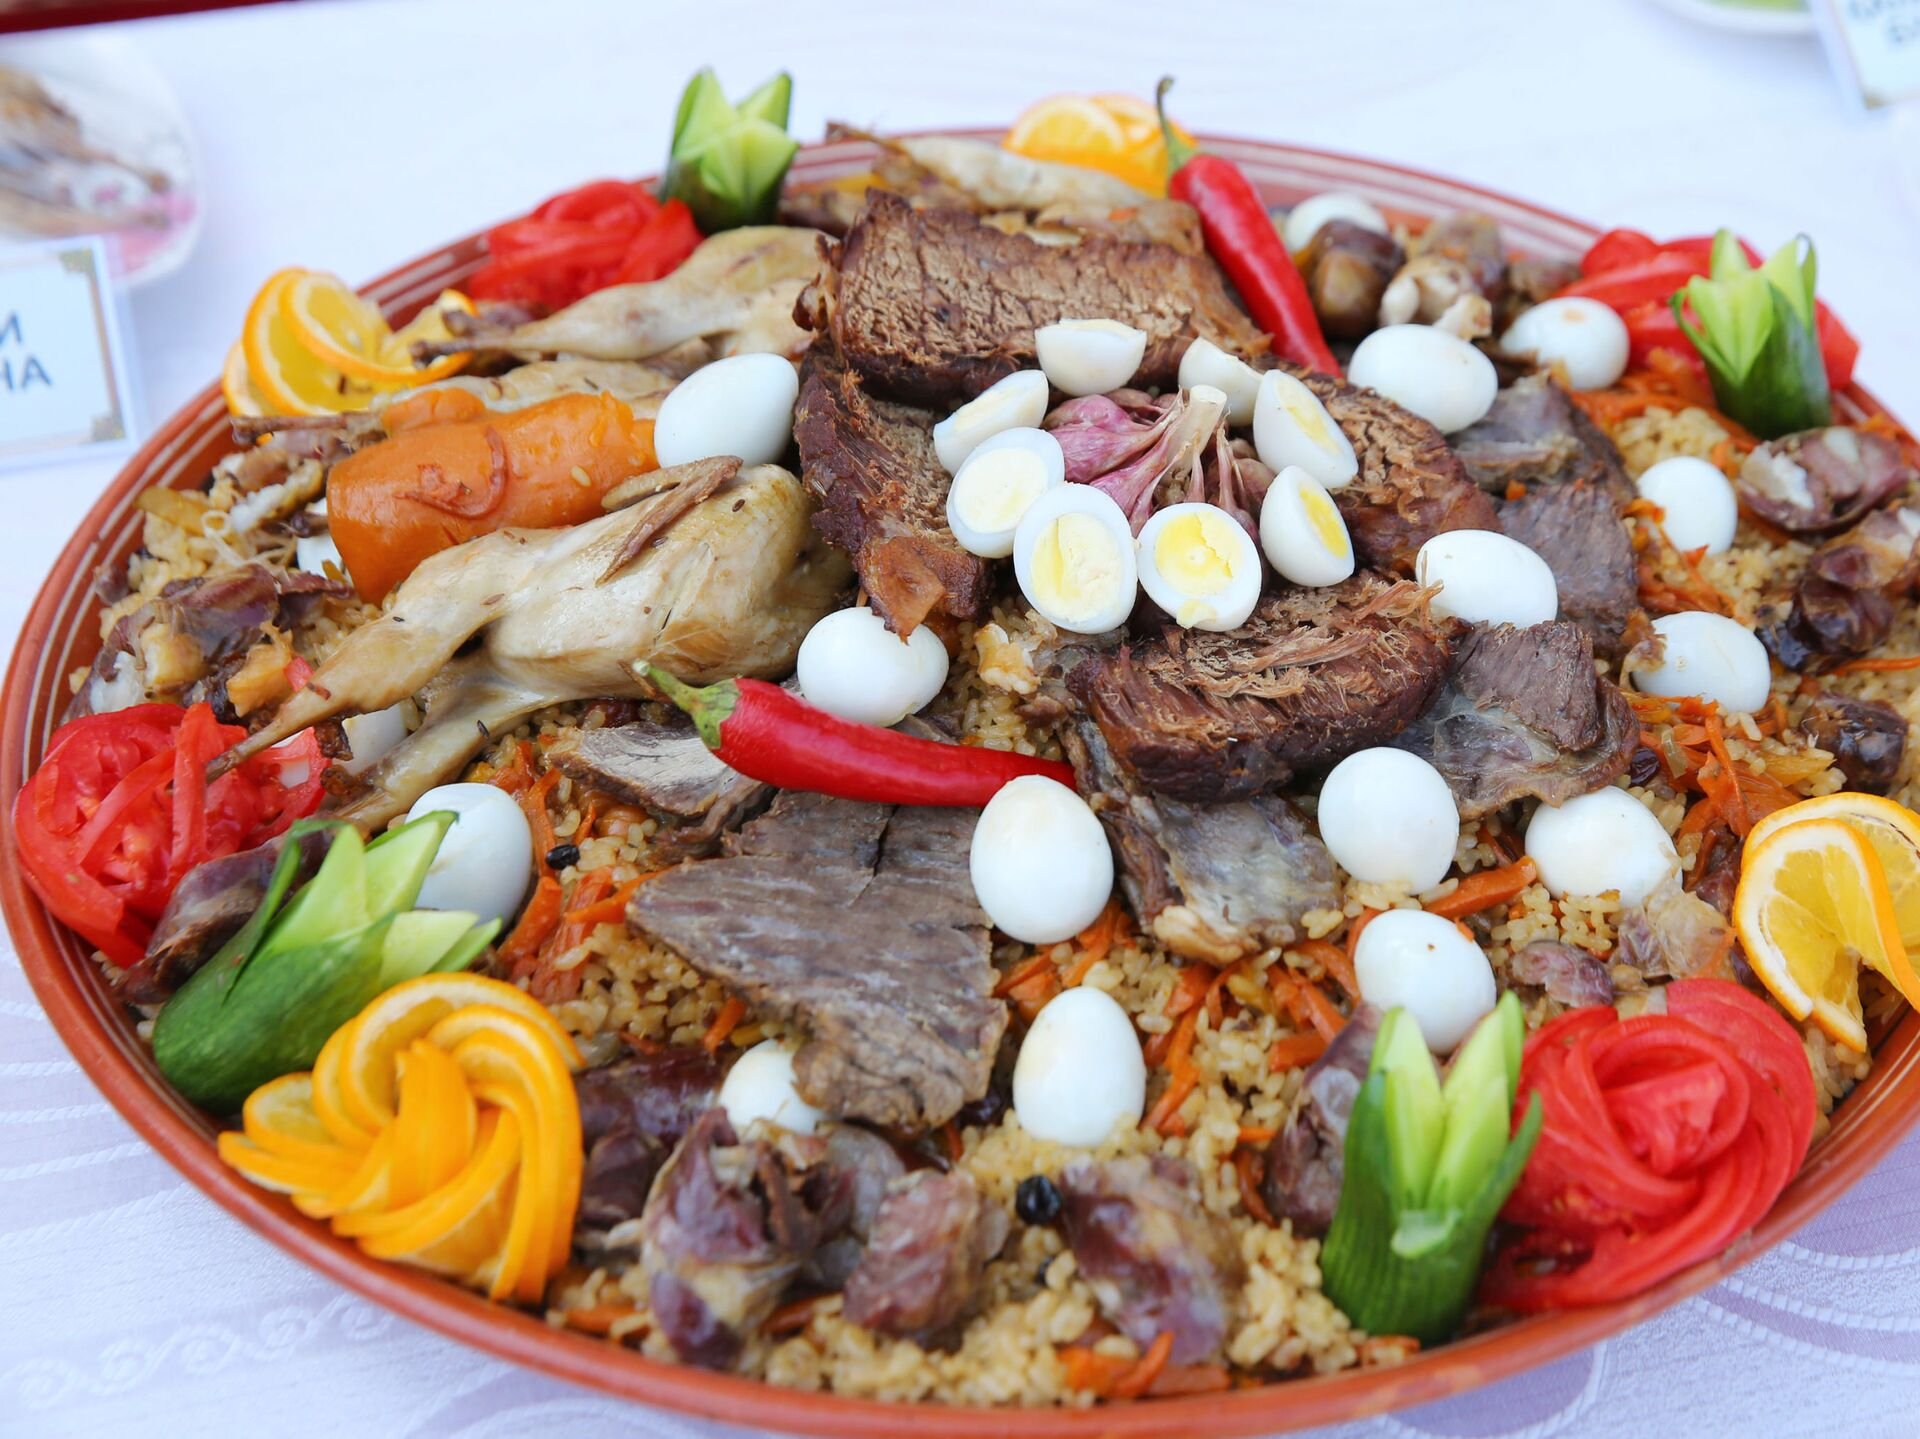 Традиции таджикской кухни. Нац блюда Таджикистана. Худжандский плов. УГРО-плов (таджикская кухня). Национальное блюдо таджиков.